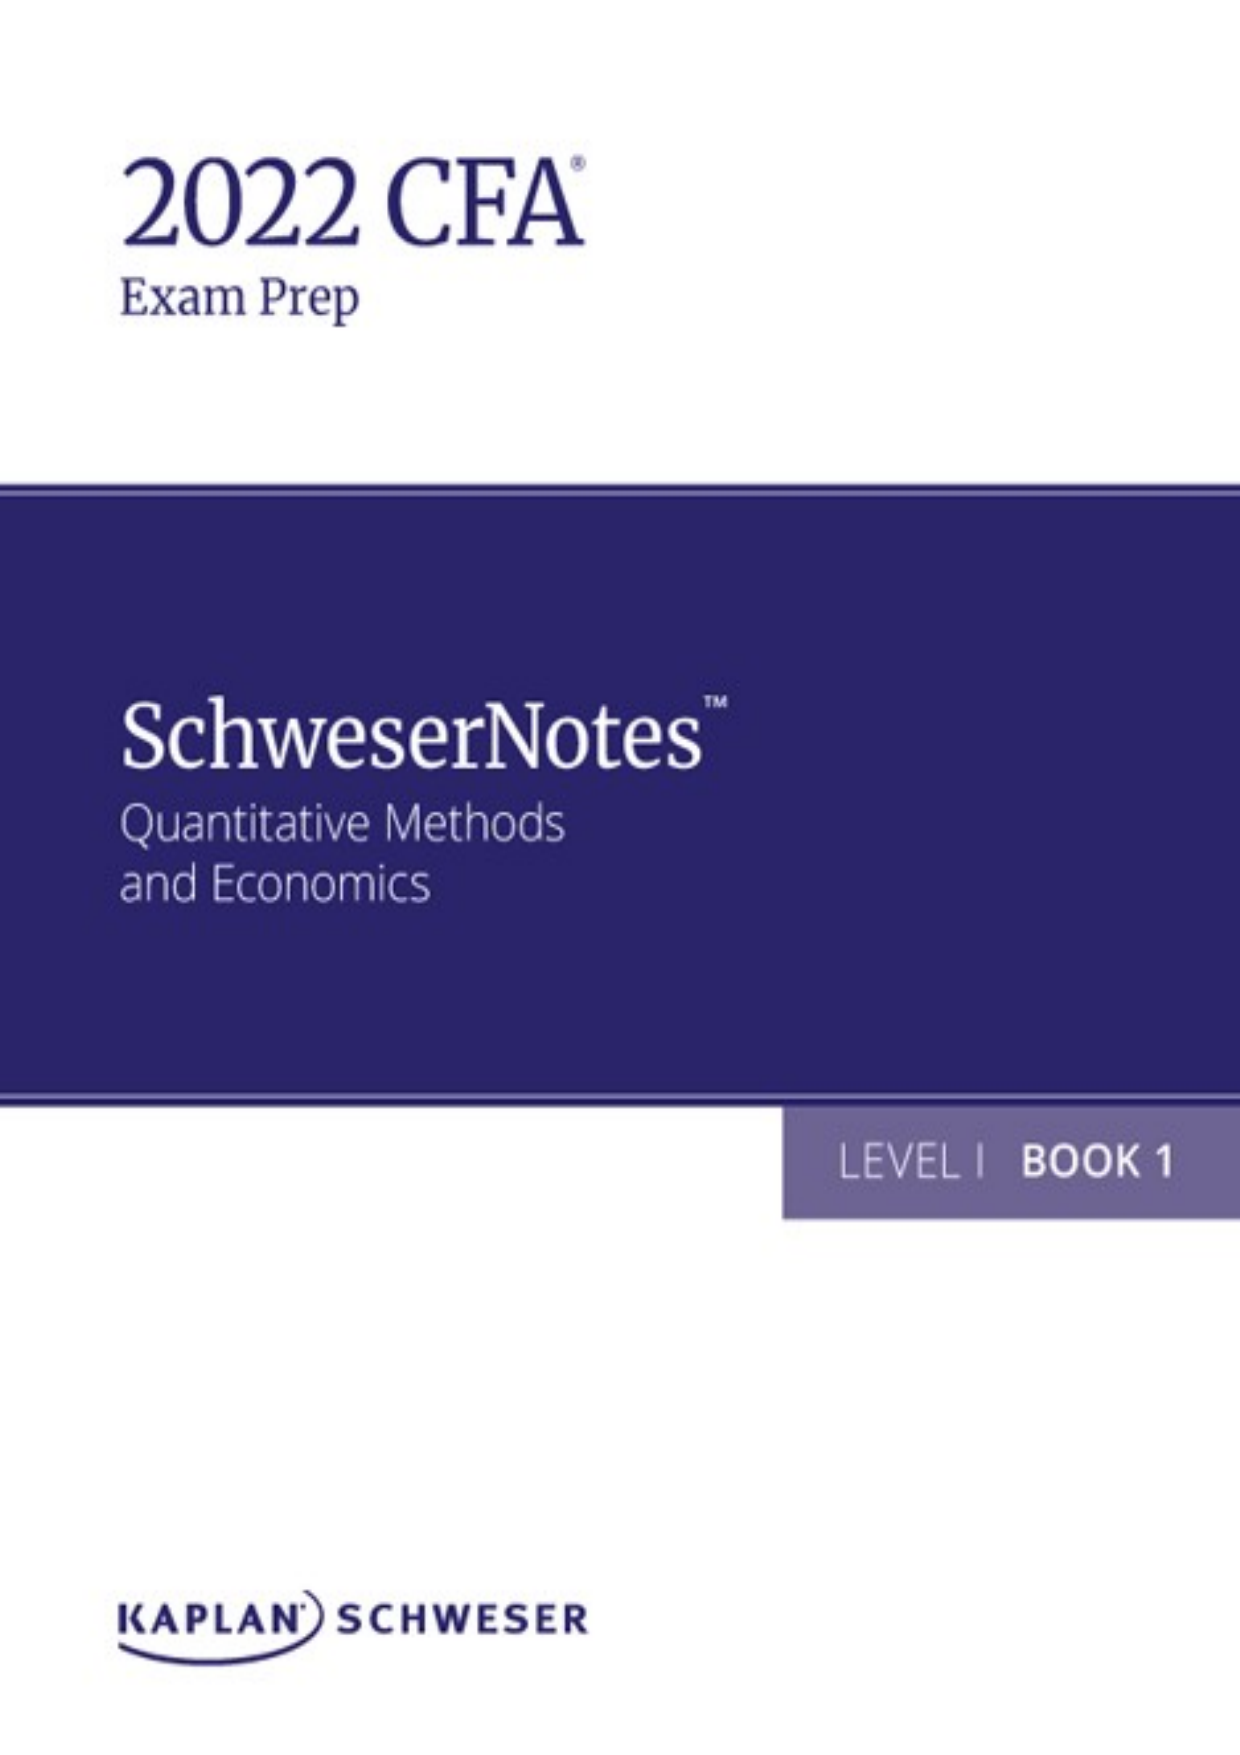 2022 CFA Level I - SchweserNotes Book 1 Sample